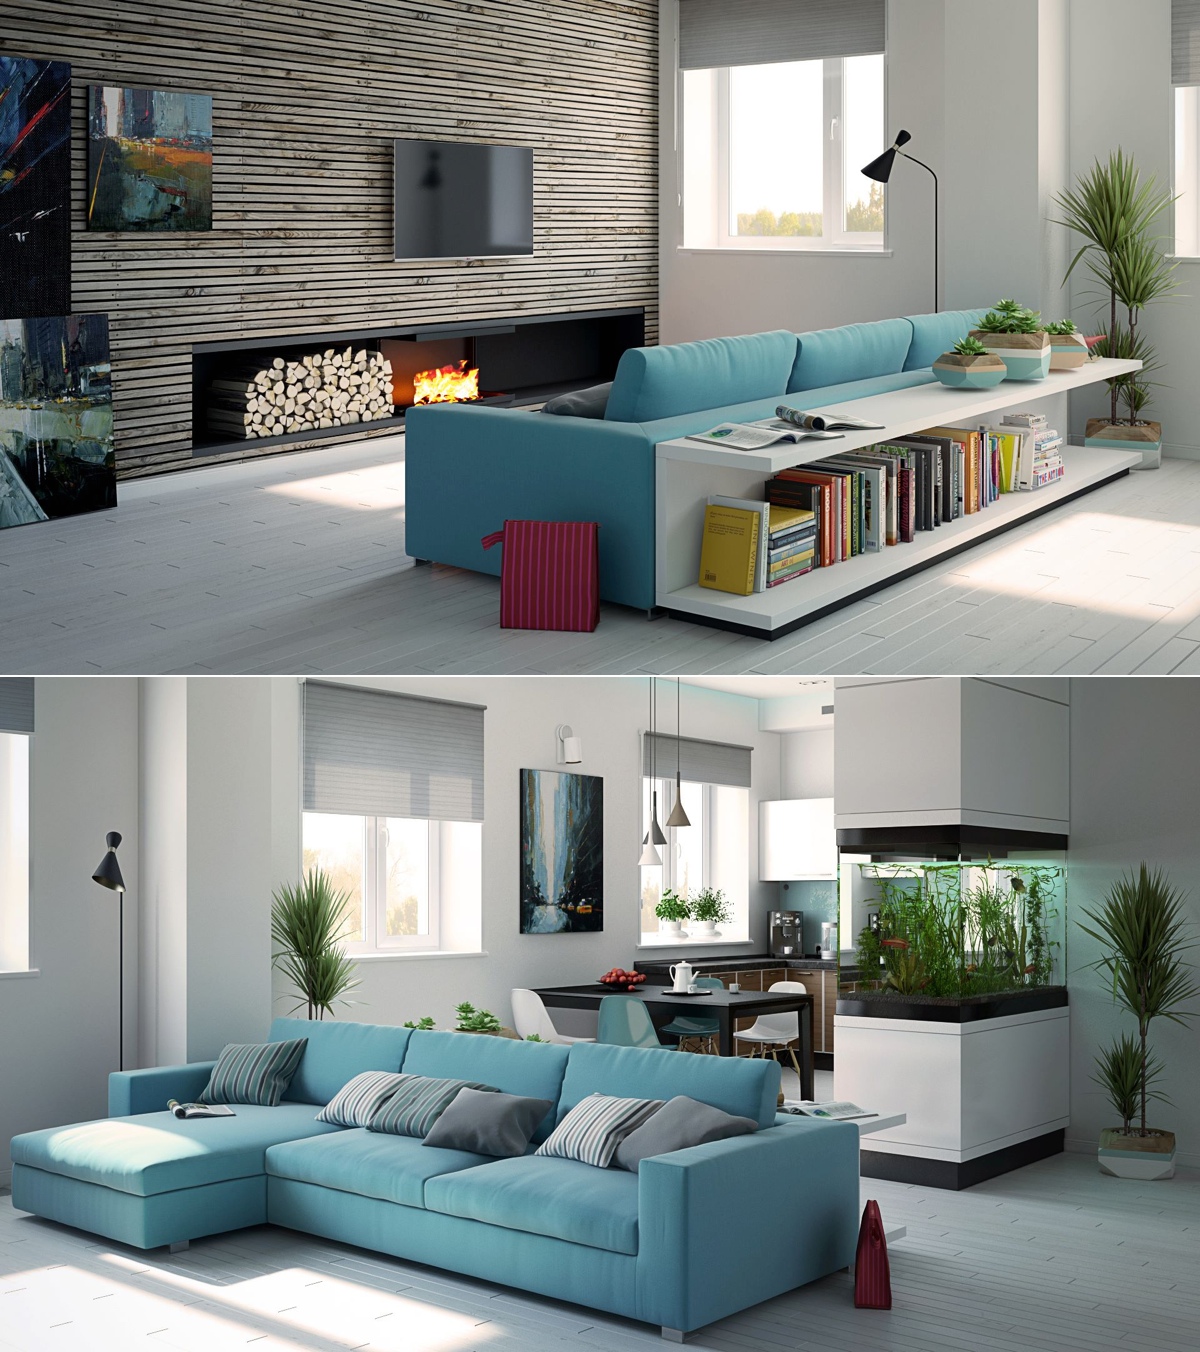 luxury living room interior design